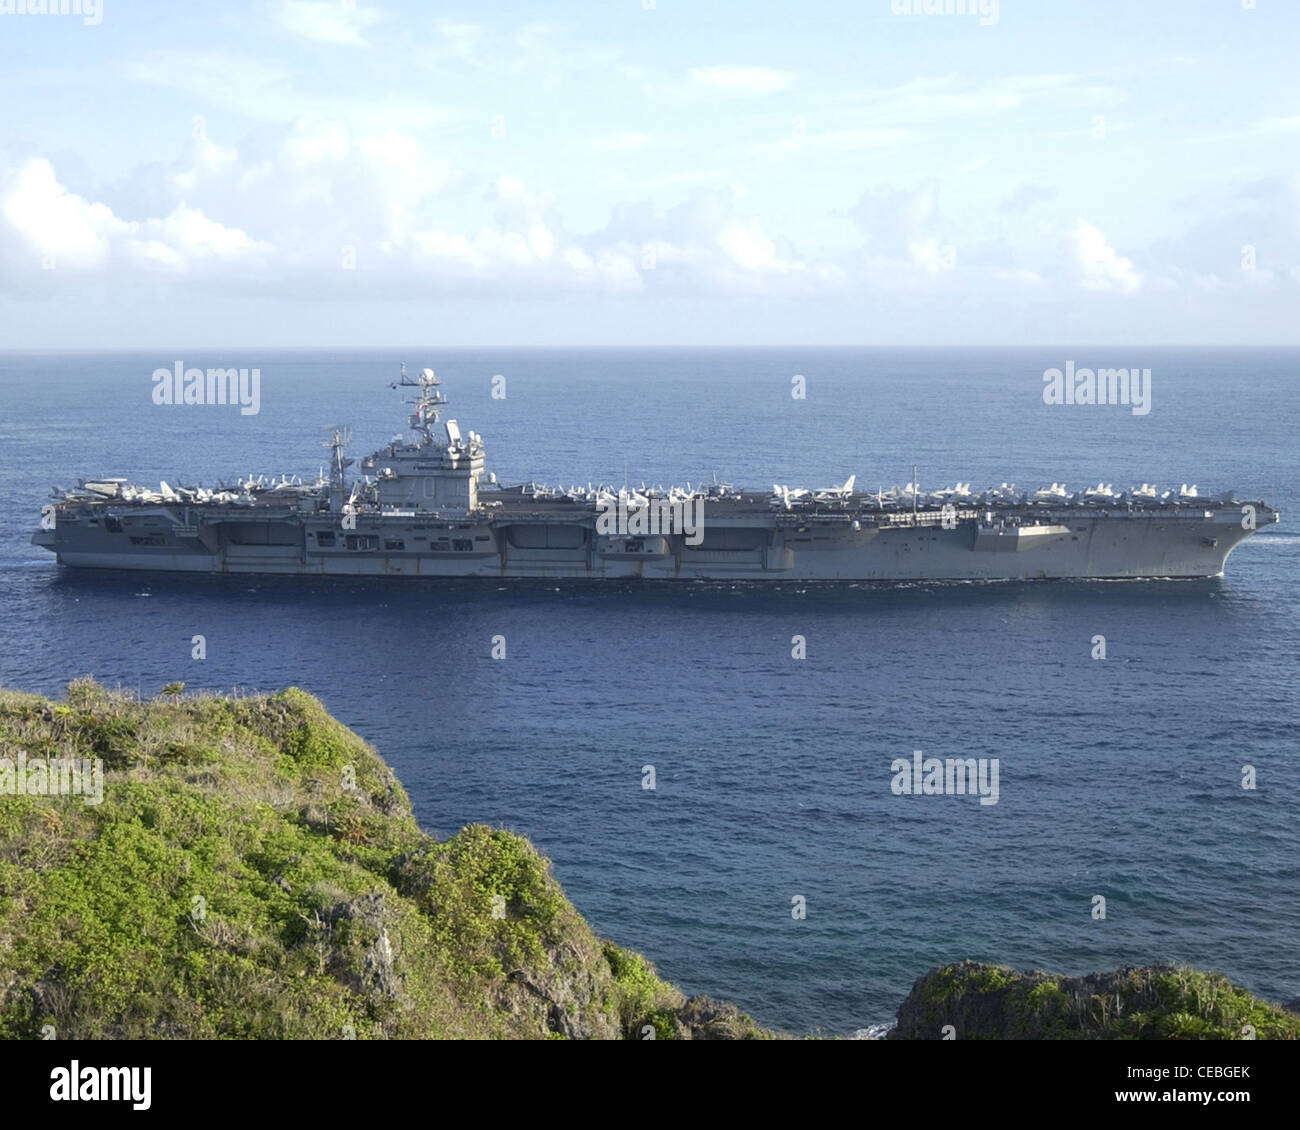 La portaerei USS Carl Vinson (CVN-70) si avvicina ad Apra Harbour per la scalata portuale a Guam. Carl Vinson e la sua aereo imbarcata Ala nove (CVW-9) sono in fase di implementazione nell'Oceano Pacifico occidentale, conducendo missioni a sostegno dell'operazione Enduring Freedom. Foto Stock